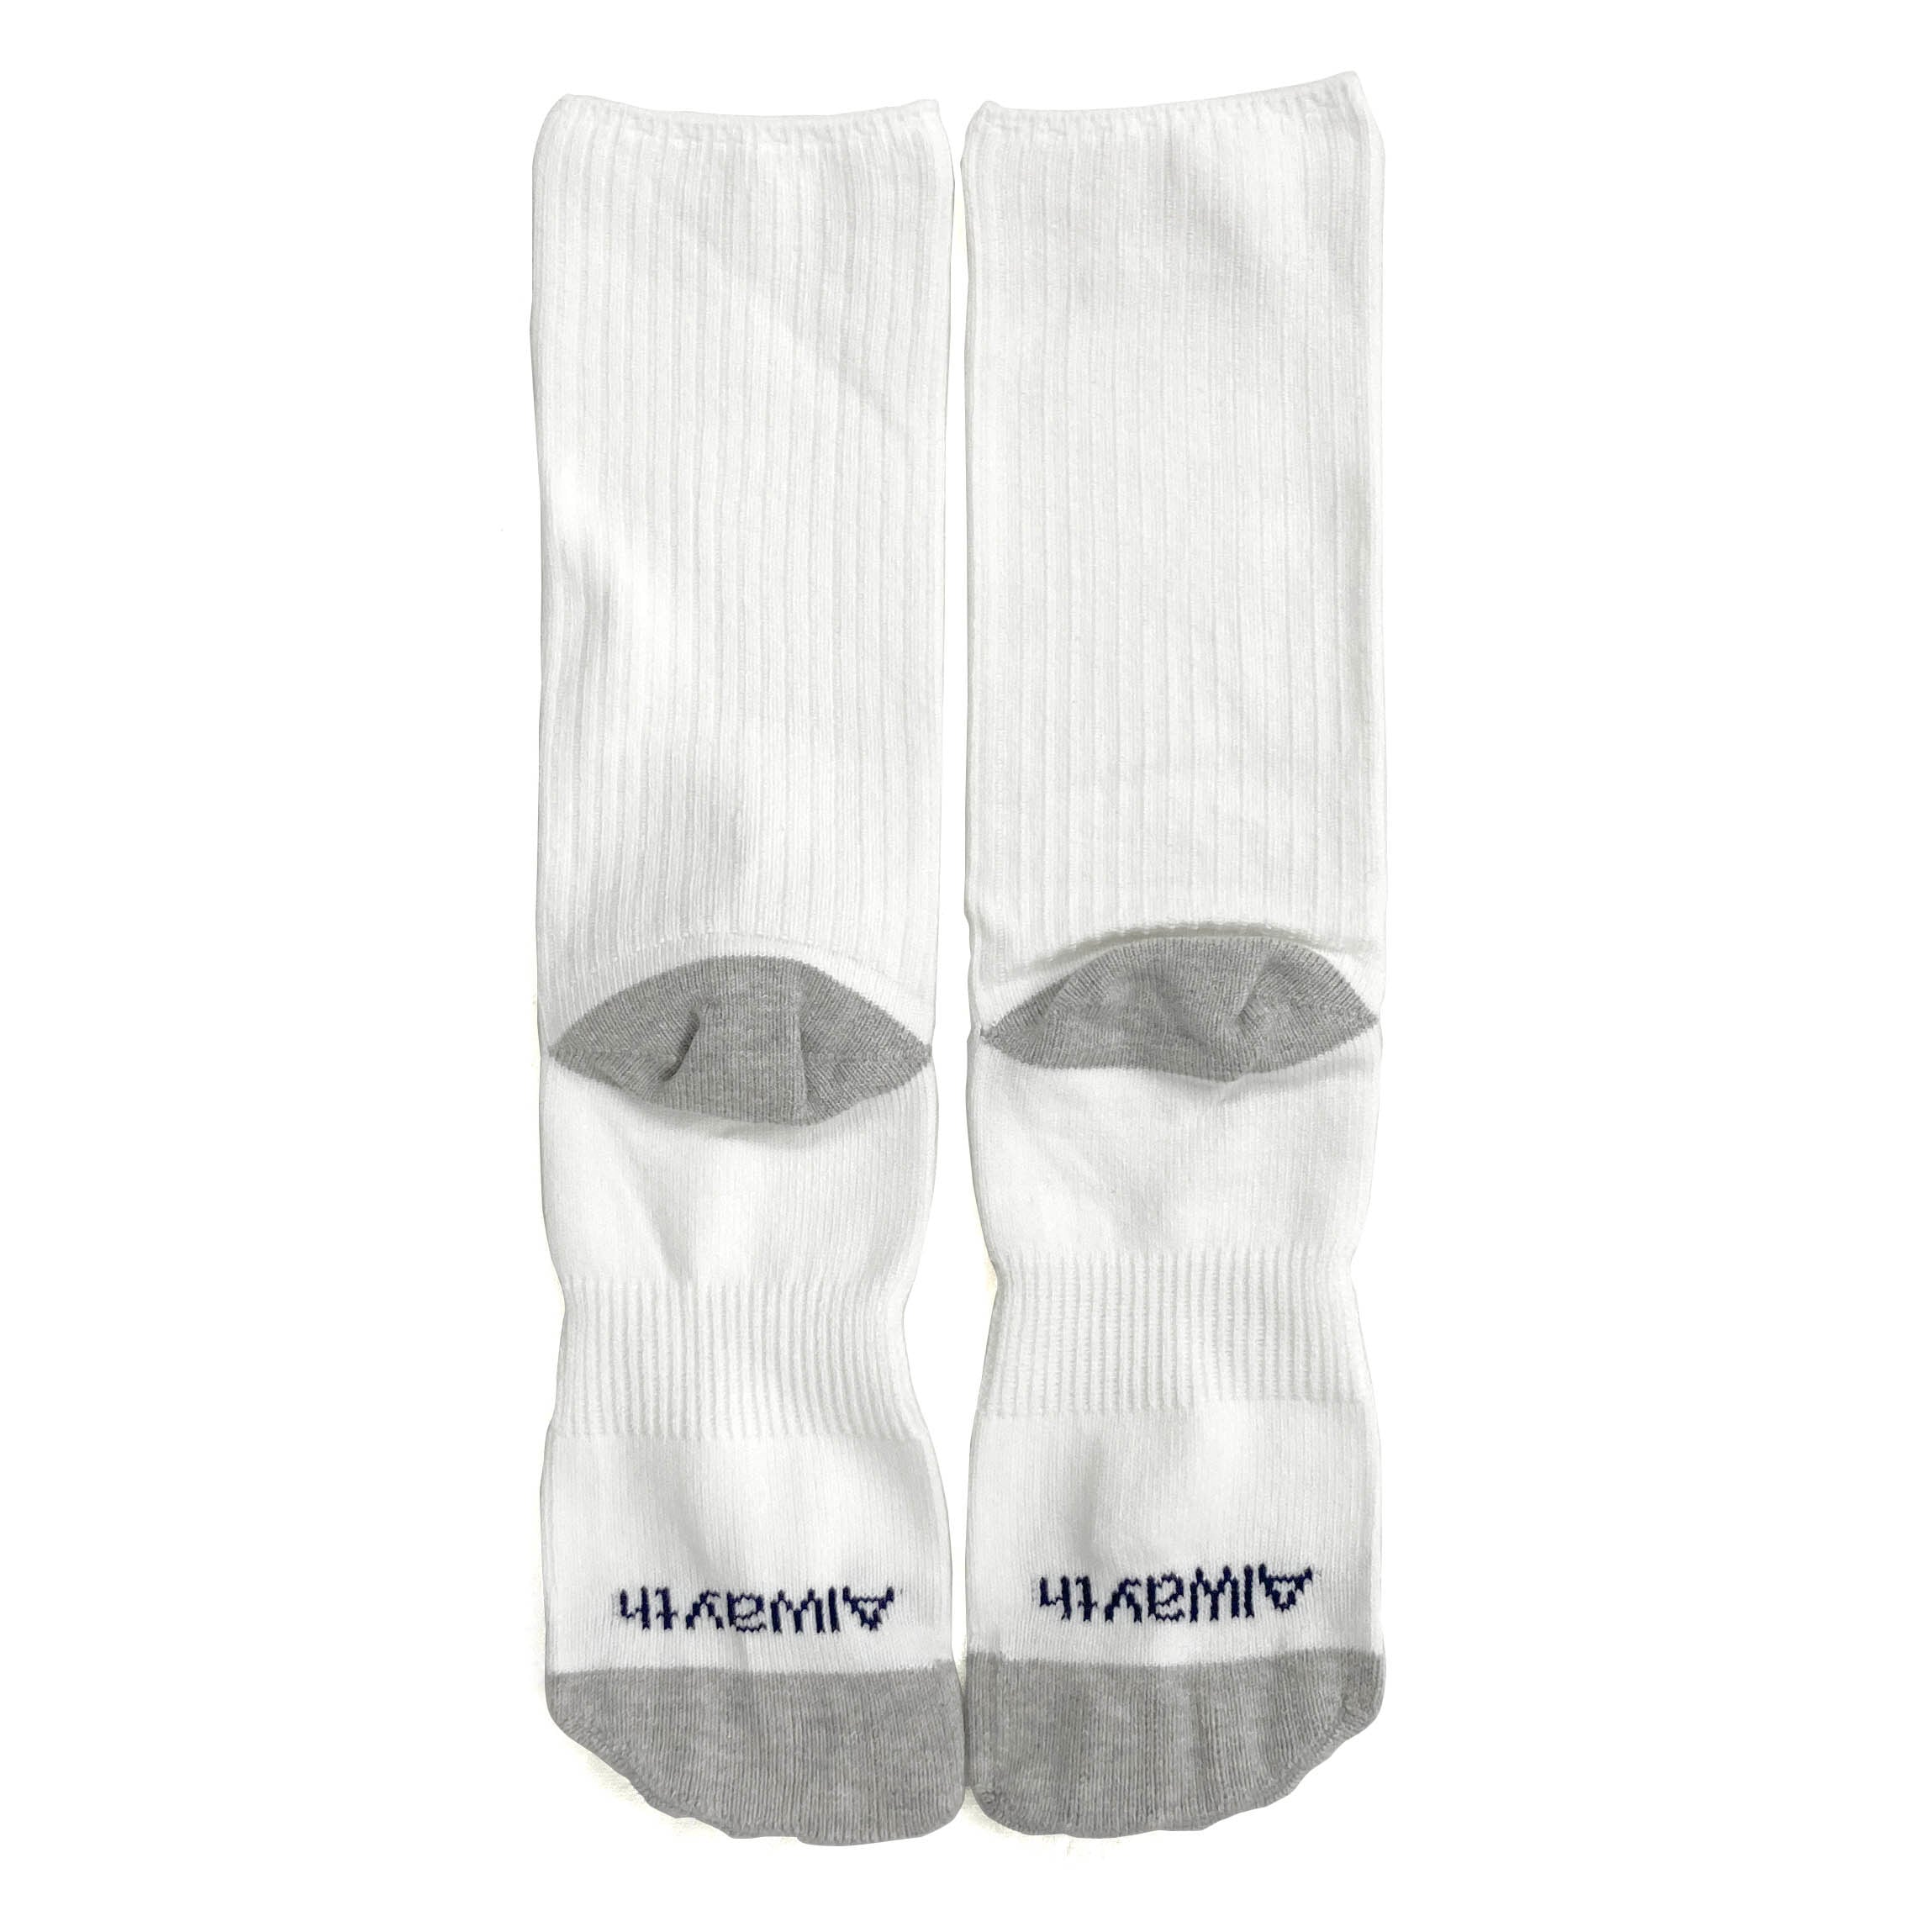 Whimsysocks × Alwayth "V Socks" White